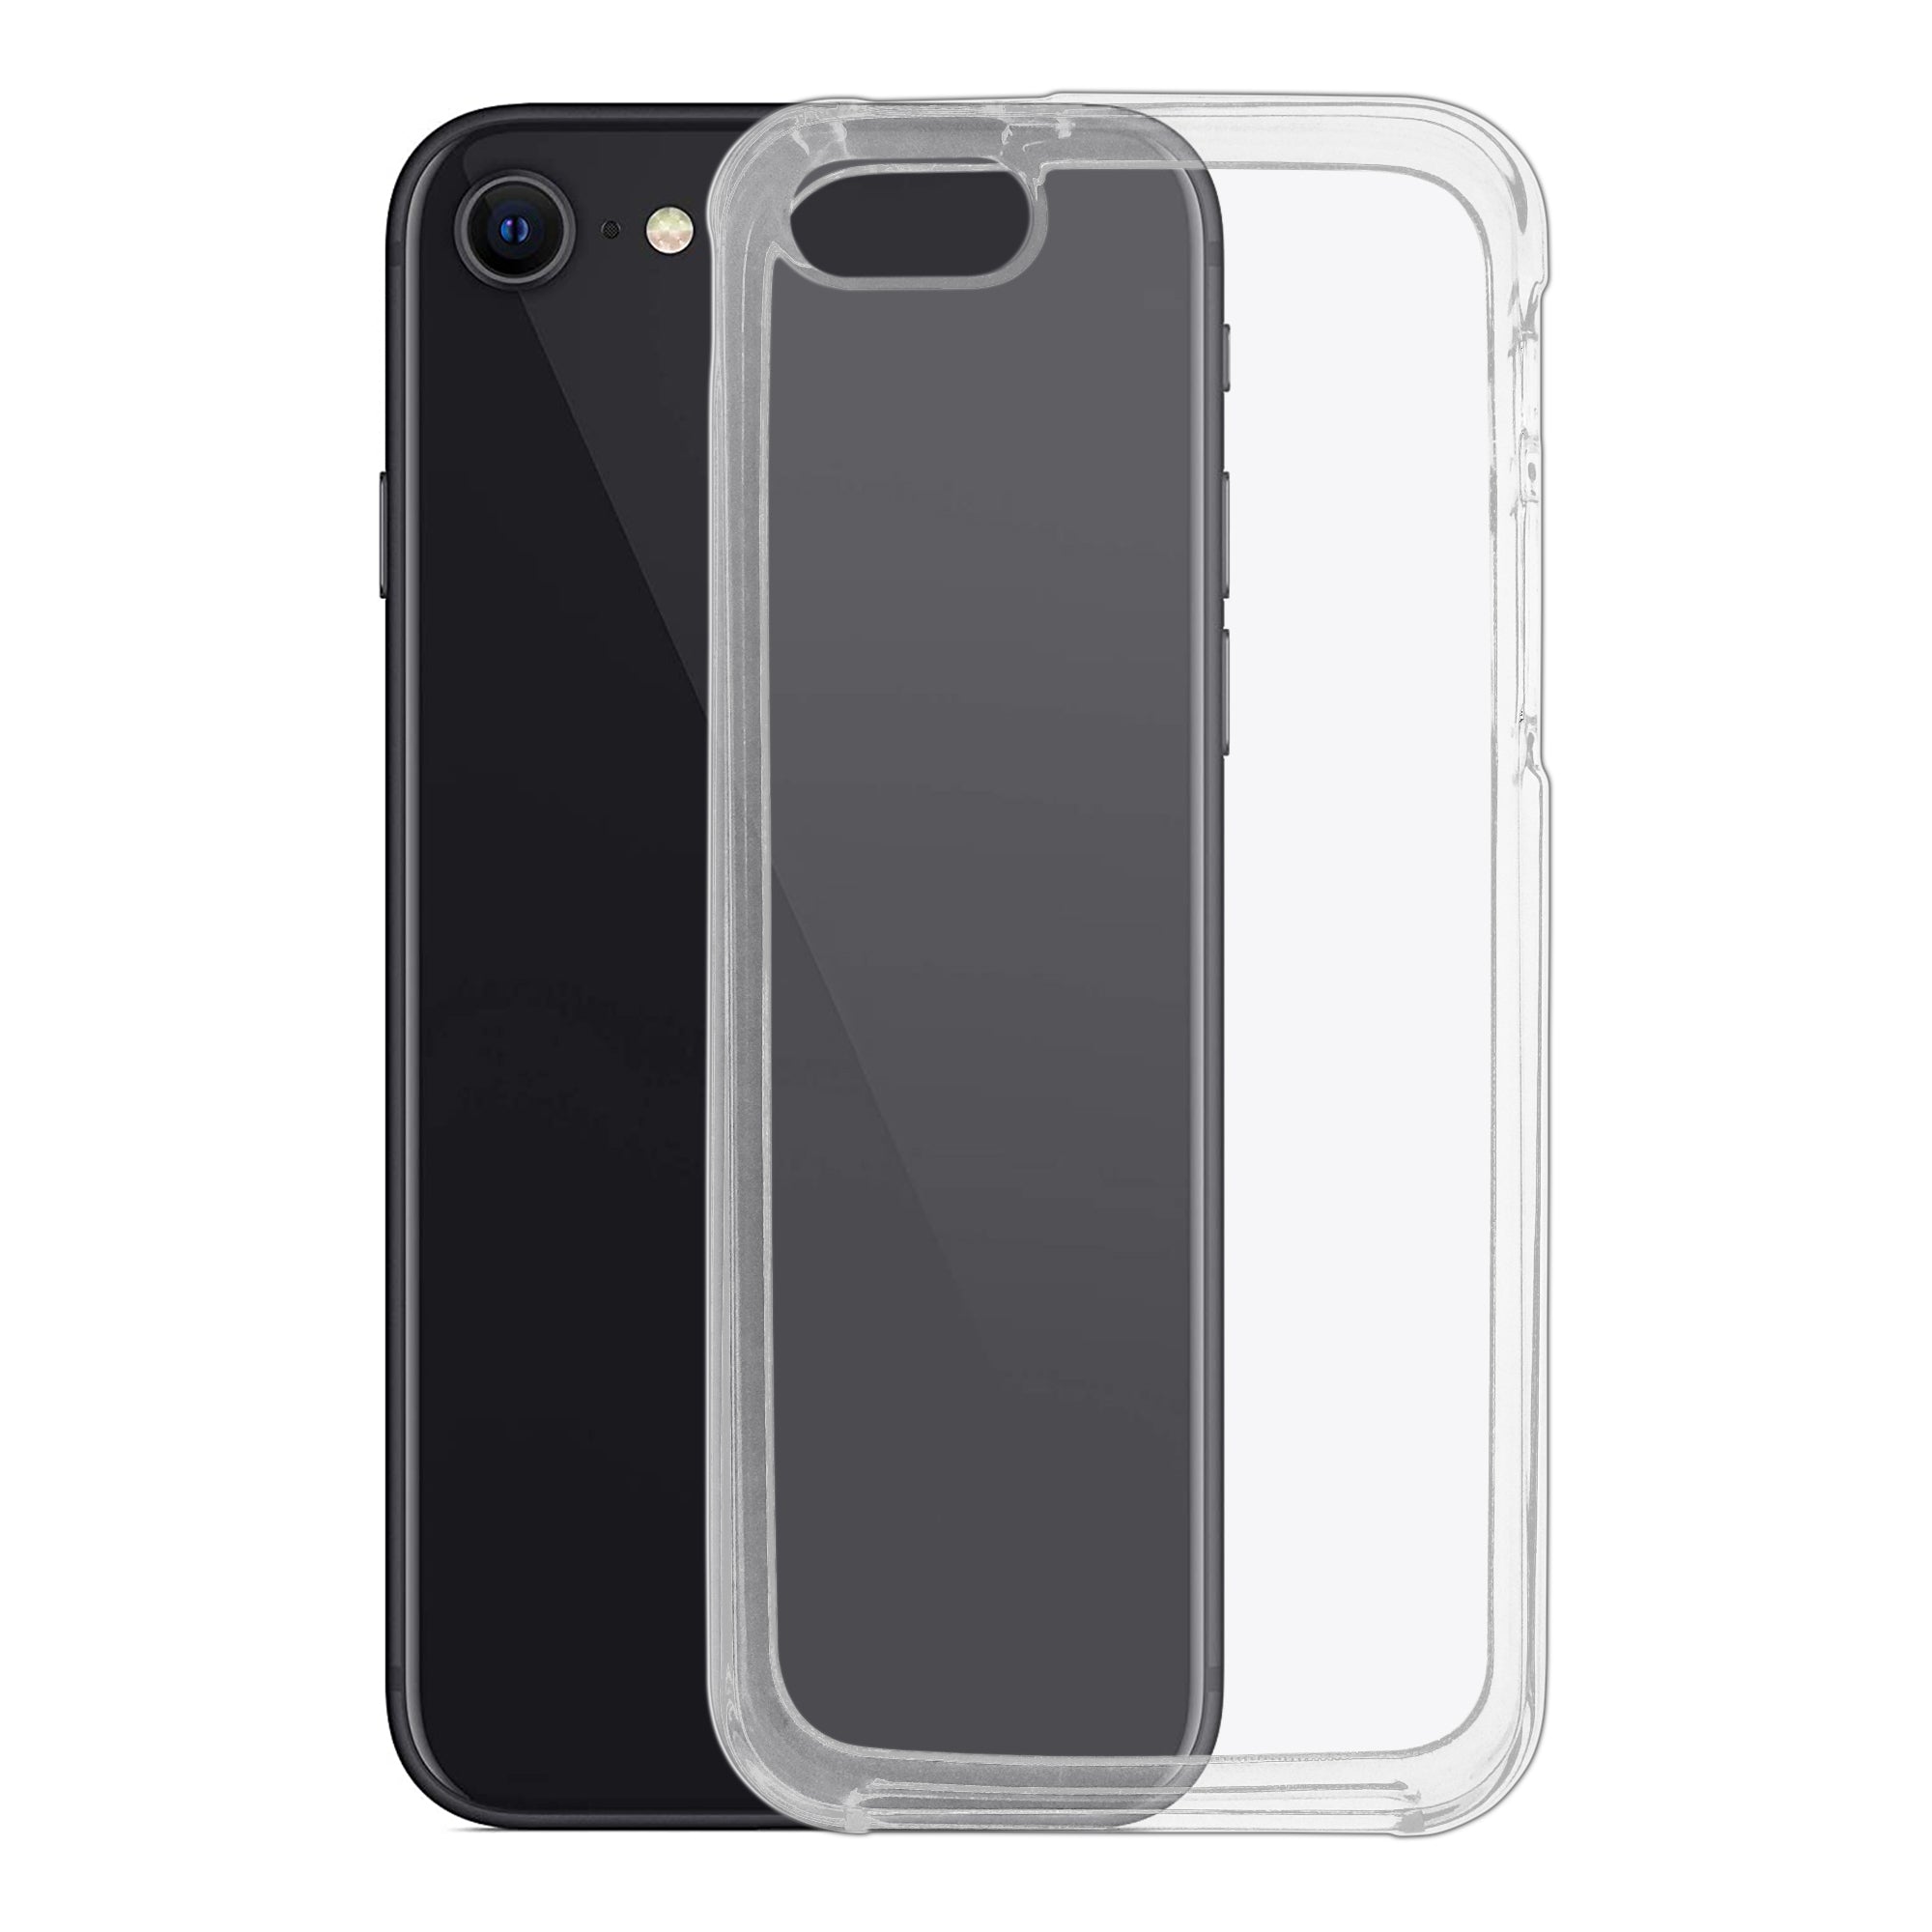 Funda de silicona para iPhone 5 5S SE 2016, carcasa bonita pintada